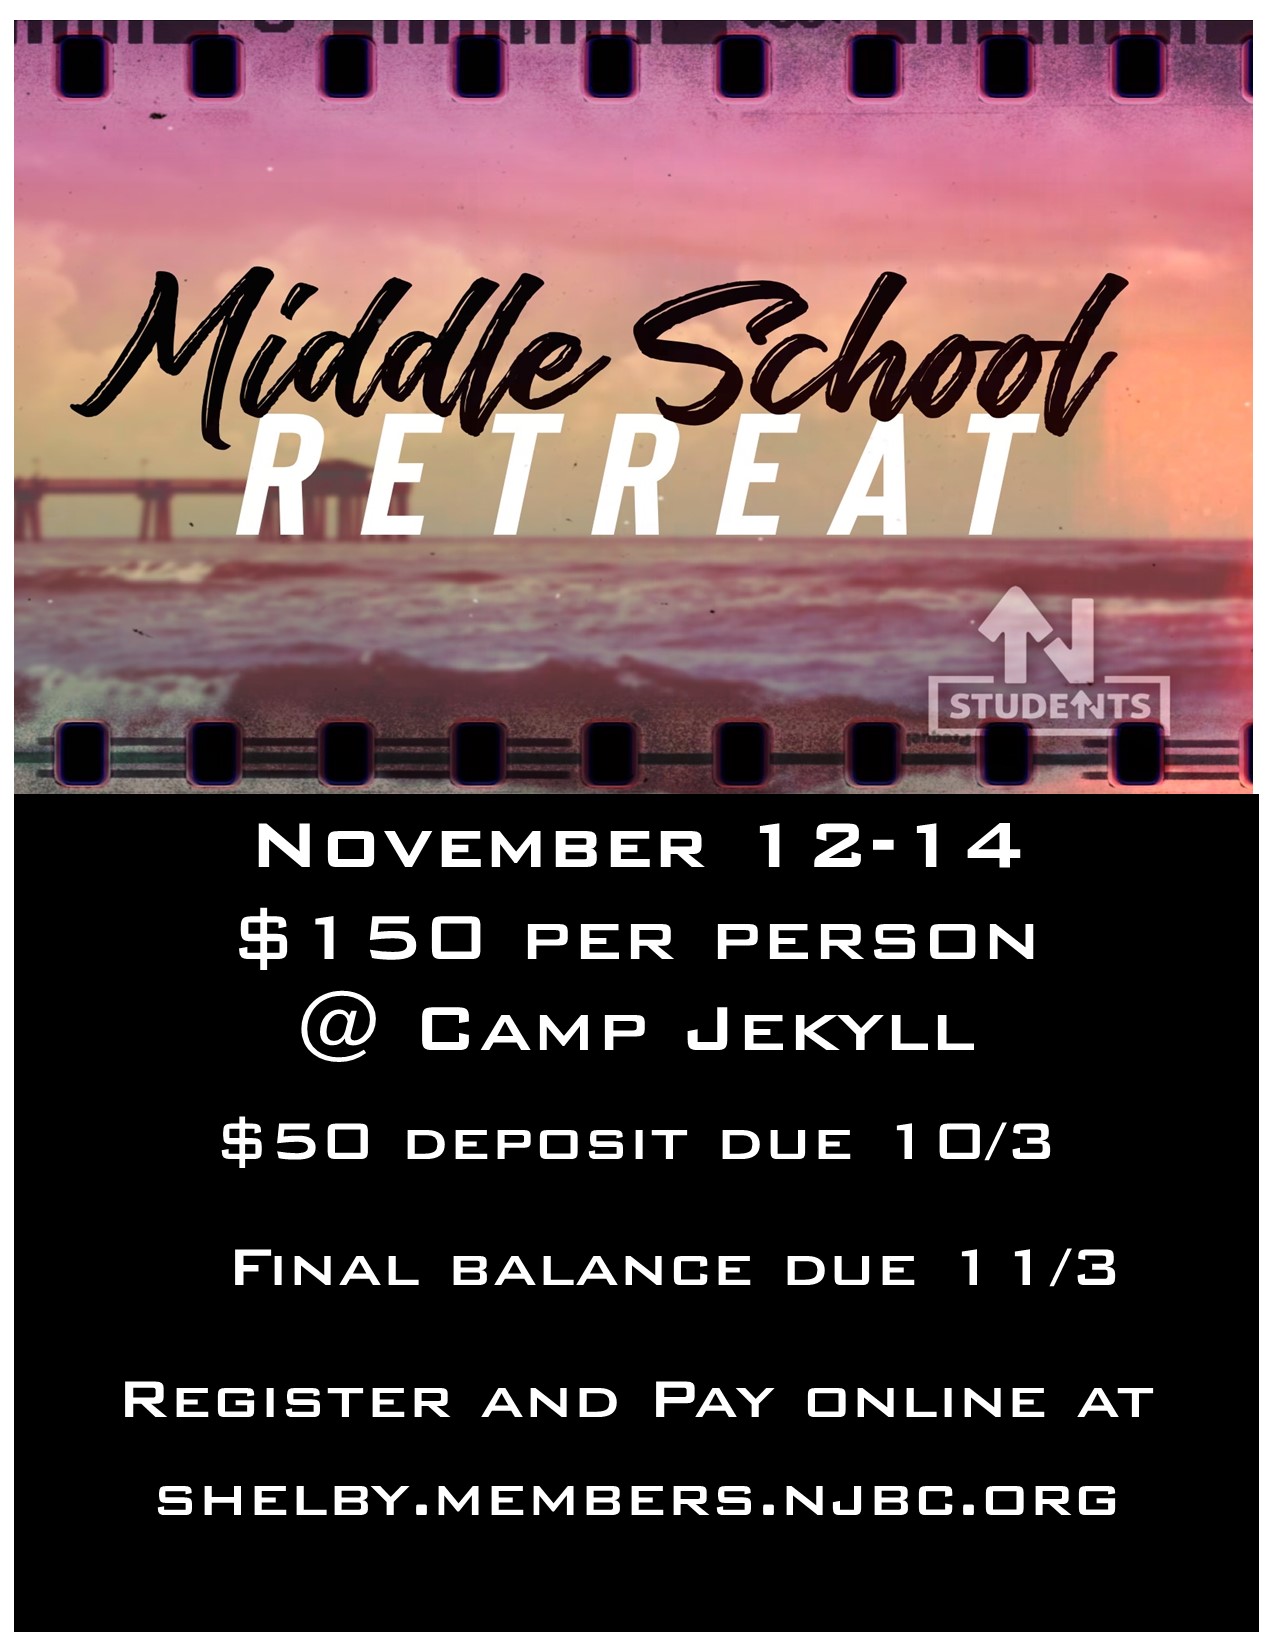 Middle School Retreat 11/12-14